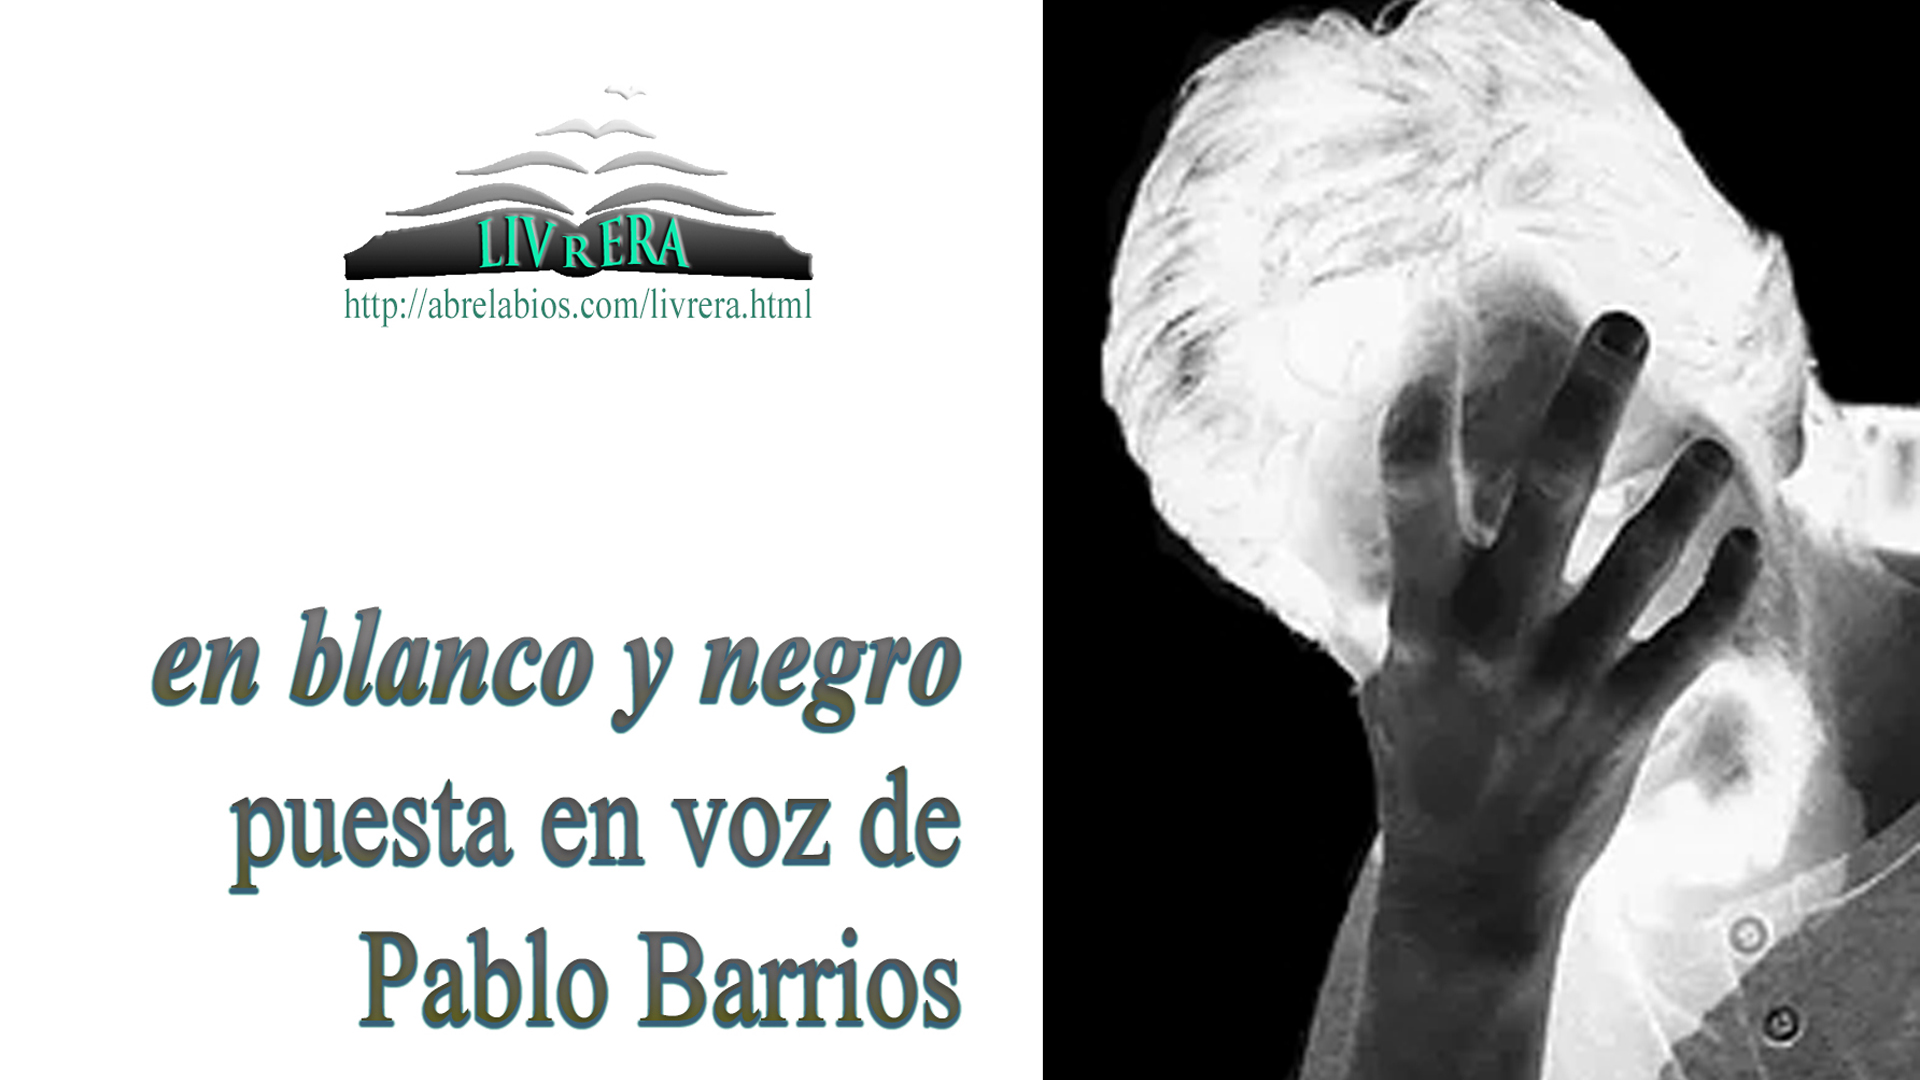 Pablo Barrios